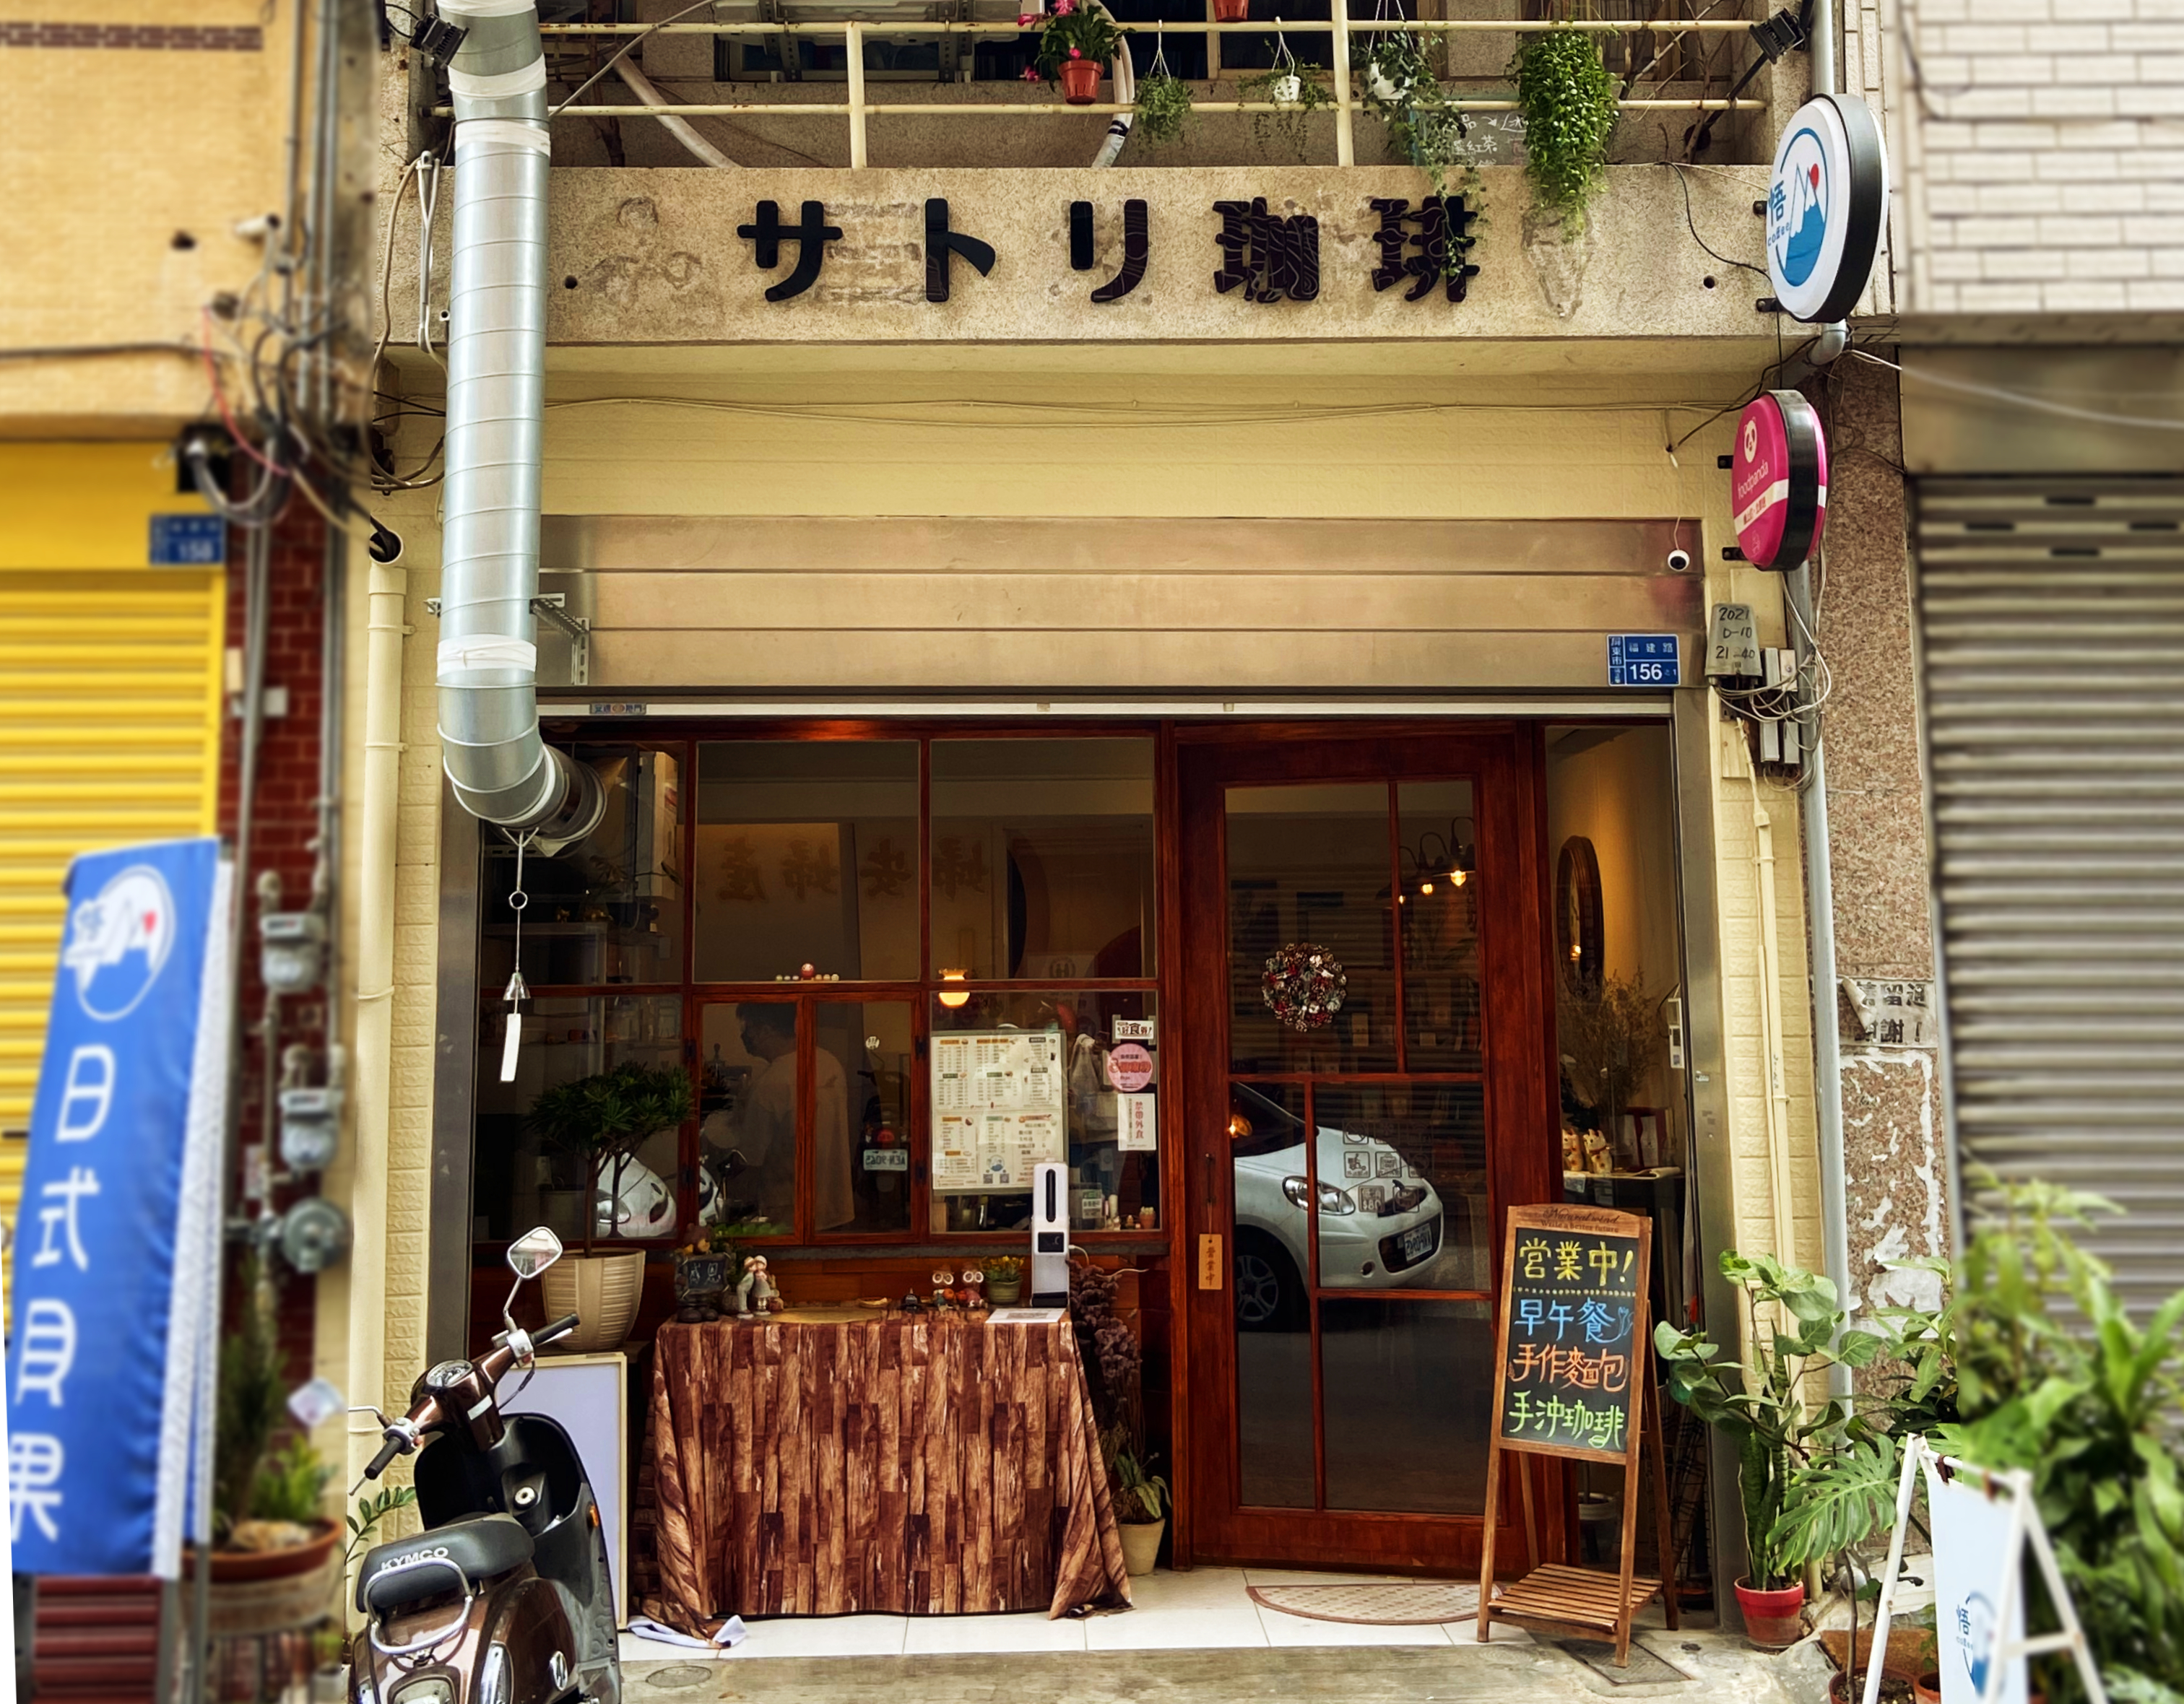 晨起的貝果香｜坐落於鬧區中的靜謐老屋咖啡